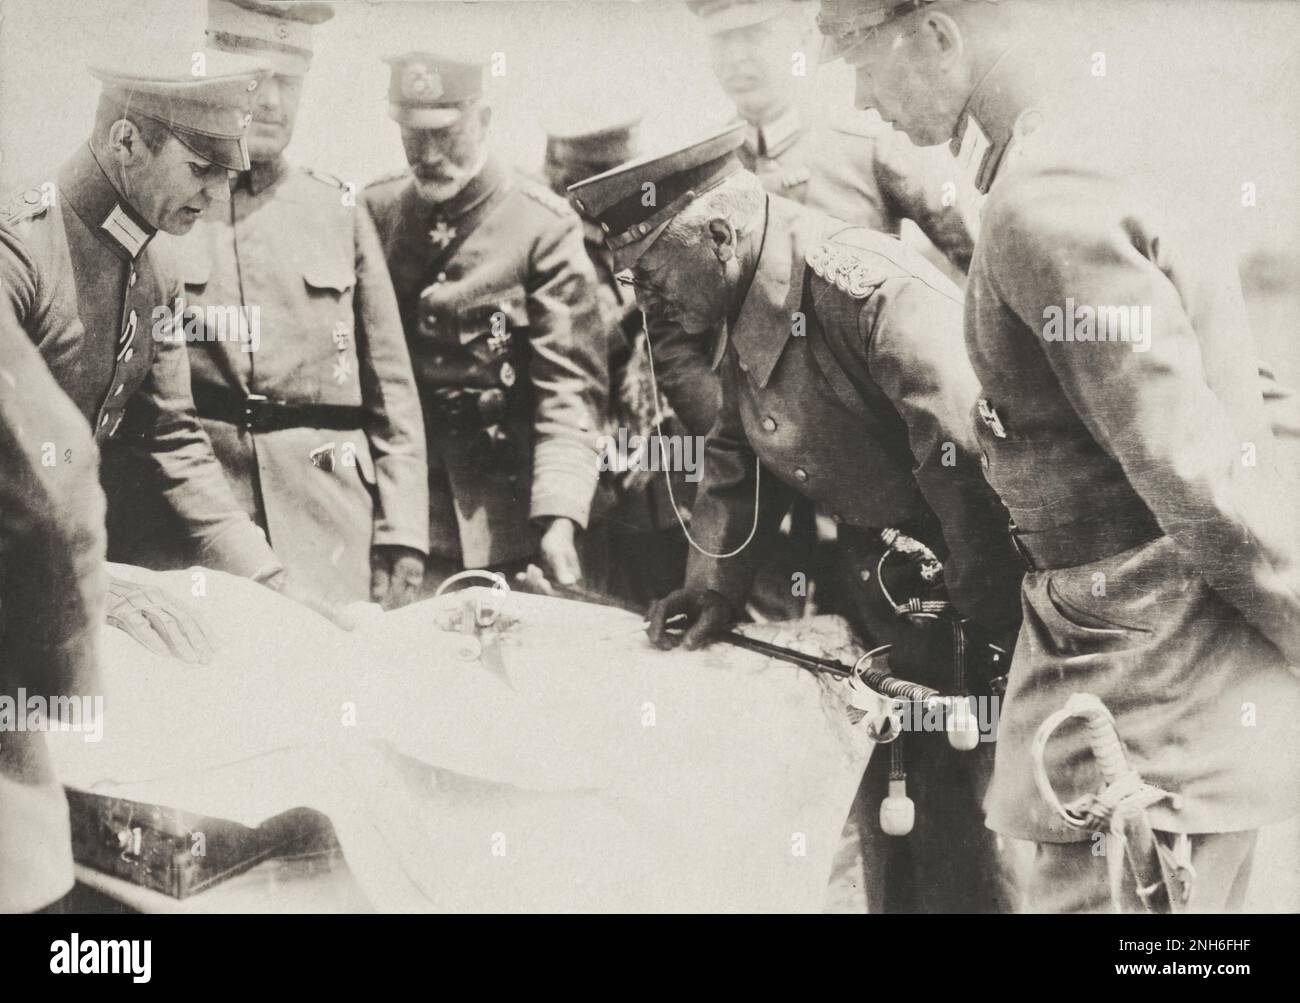 1914-1918. Erster Weltkrieg Der deutsche Kaiser Wilhelm II. Und sein Bruder Heinrich von Preußen studierten während eines Truppenbesuchs eine Karte. Stockfoto